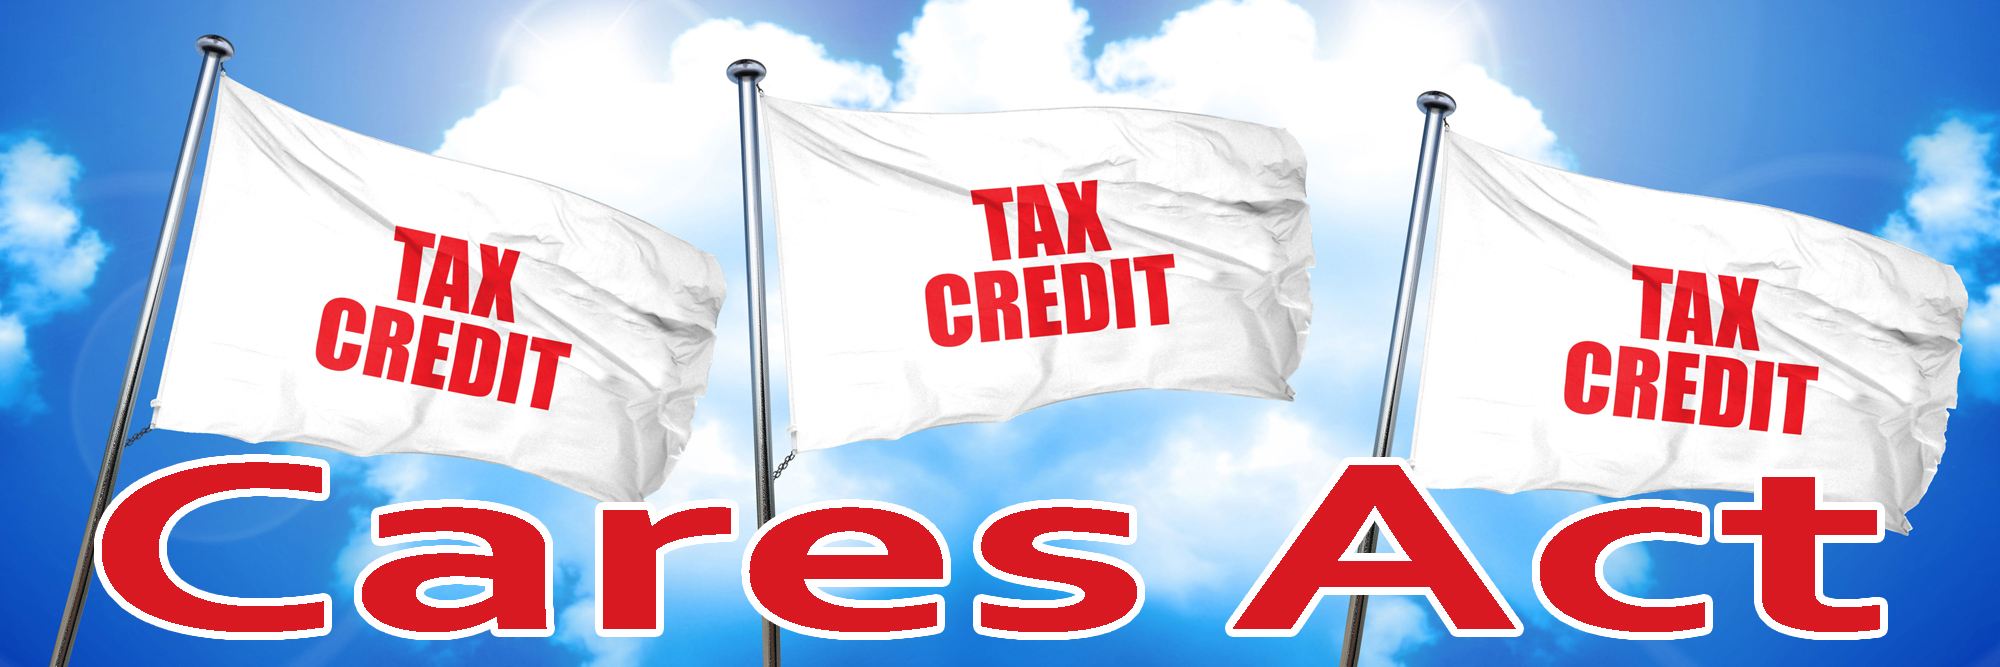 Get Cares Act Tax Credit